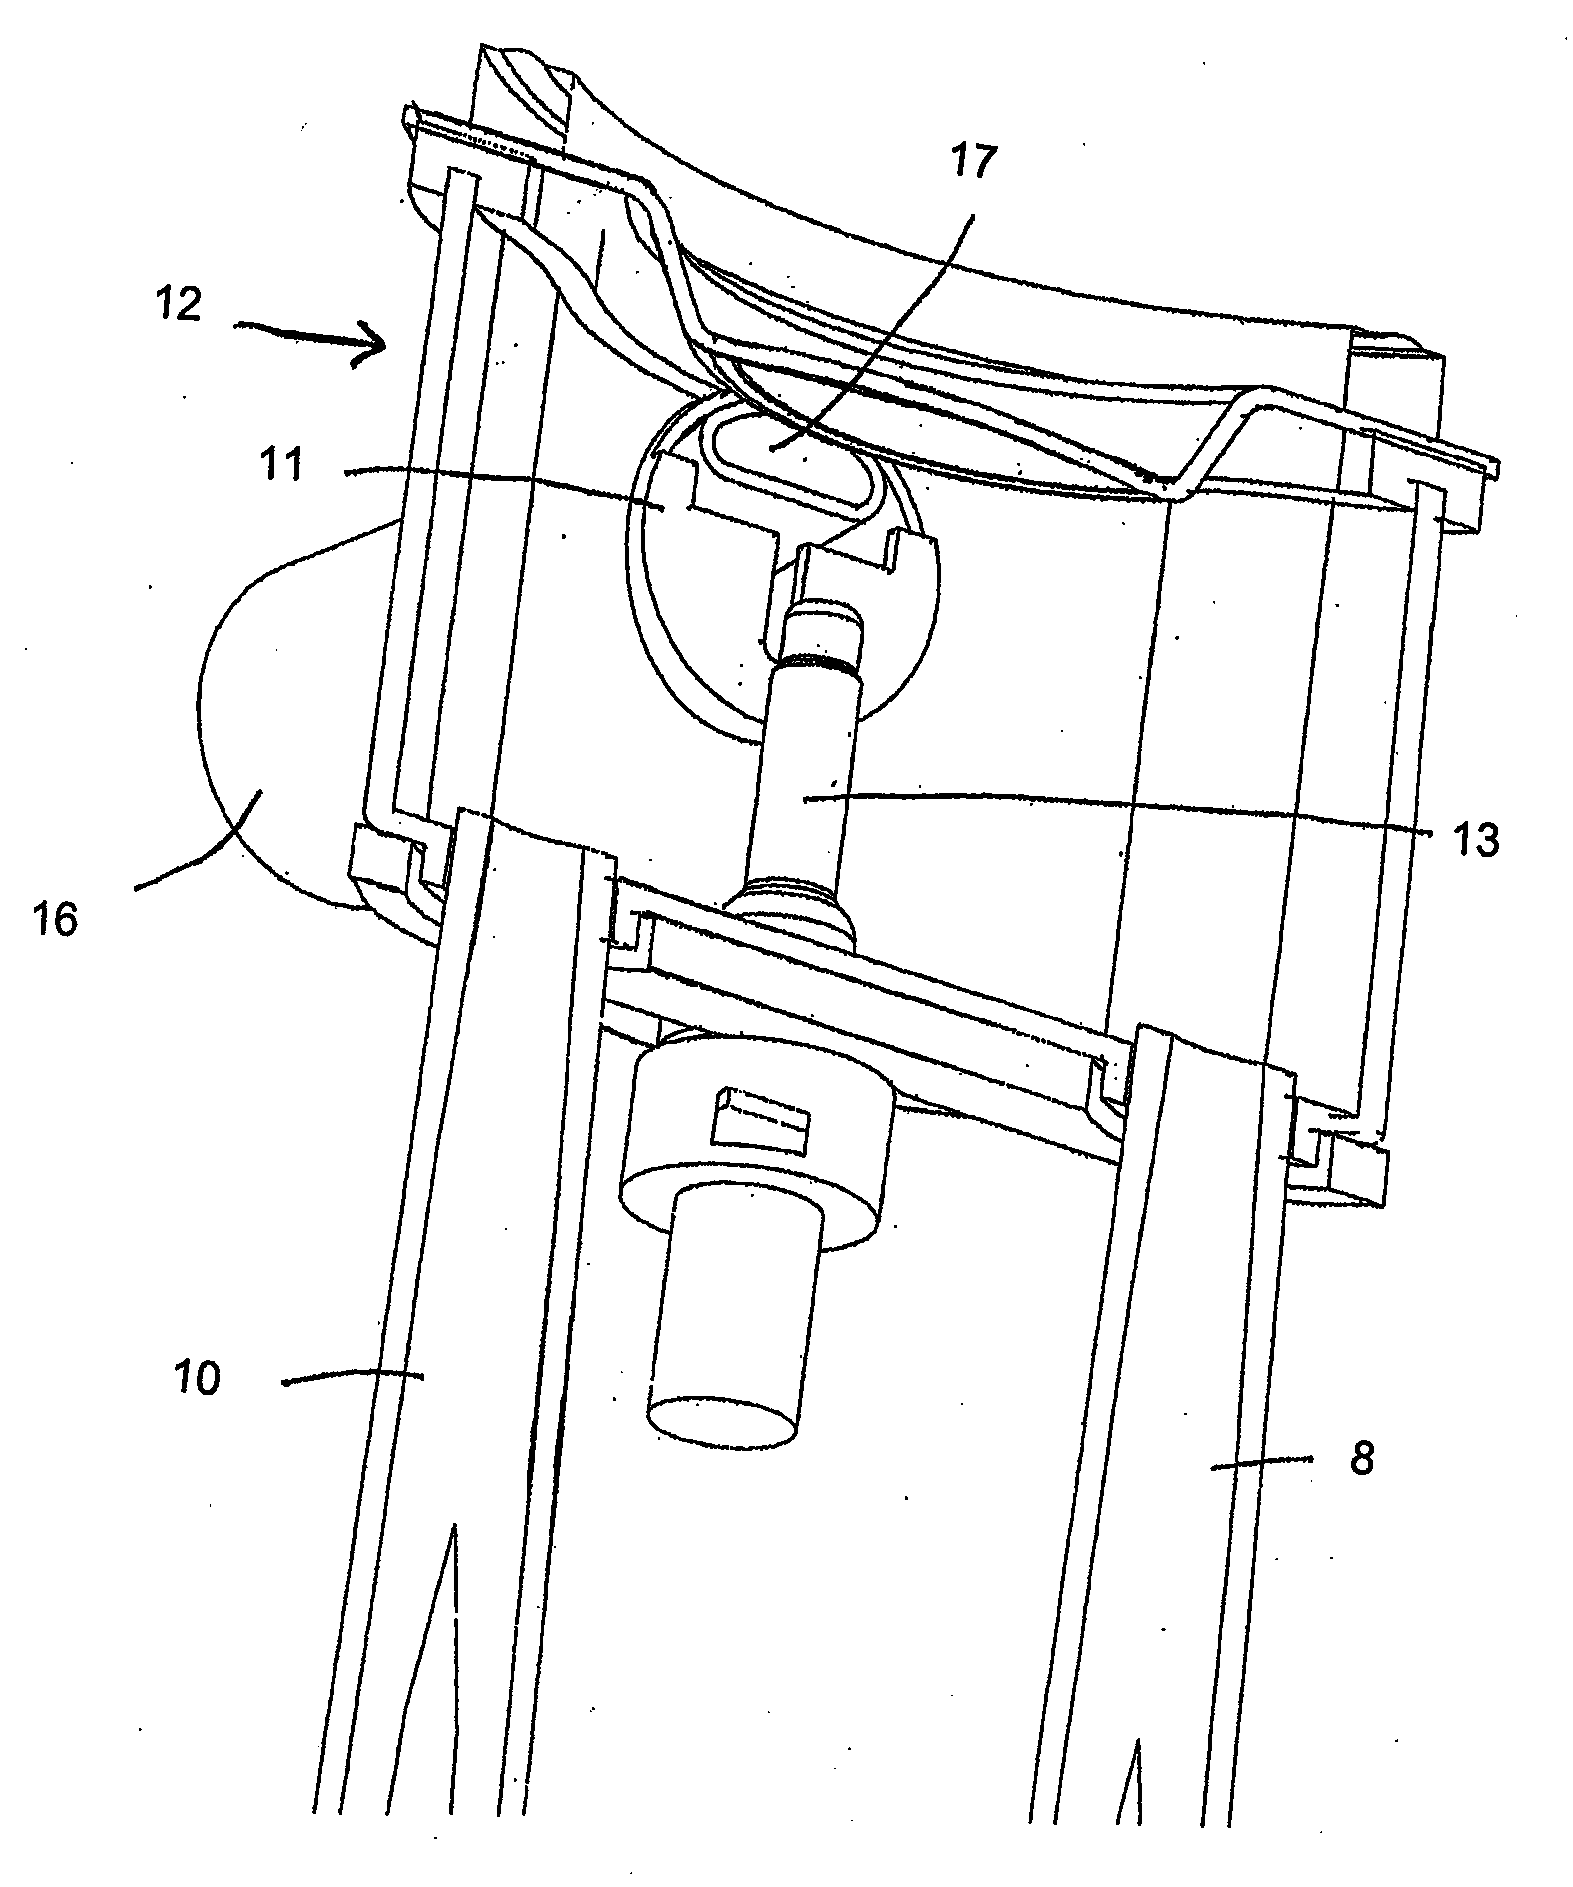 Liquid heating apparatus